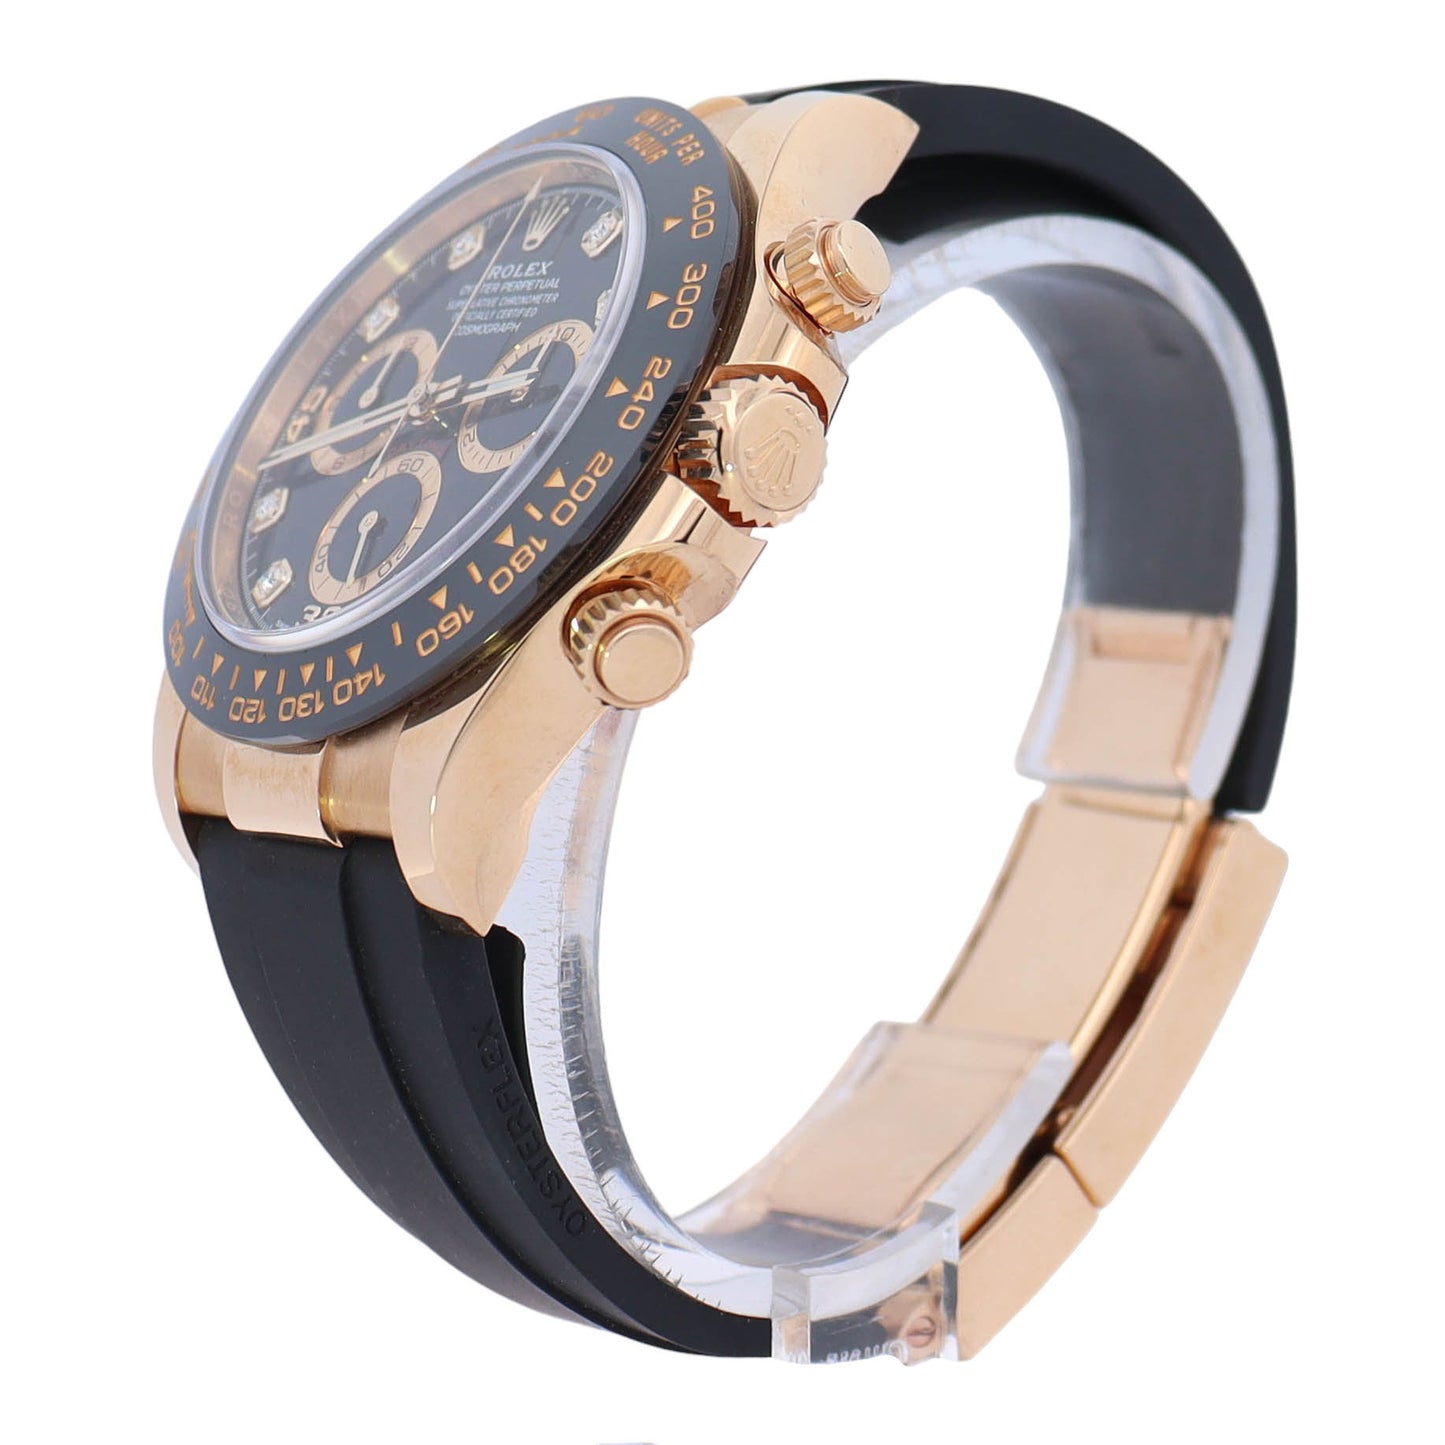 Rolex Daytona 40mm Yellow Gold Black Diamond Dial Watch Reference# 116518LN - Happy Jewelers Fine Jewelry Lifetime Warranty